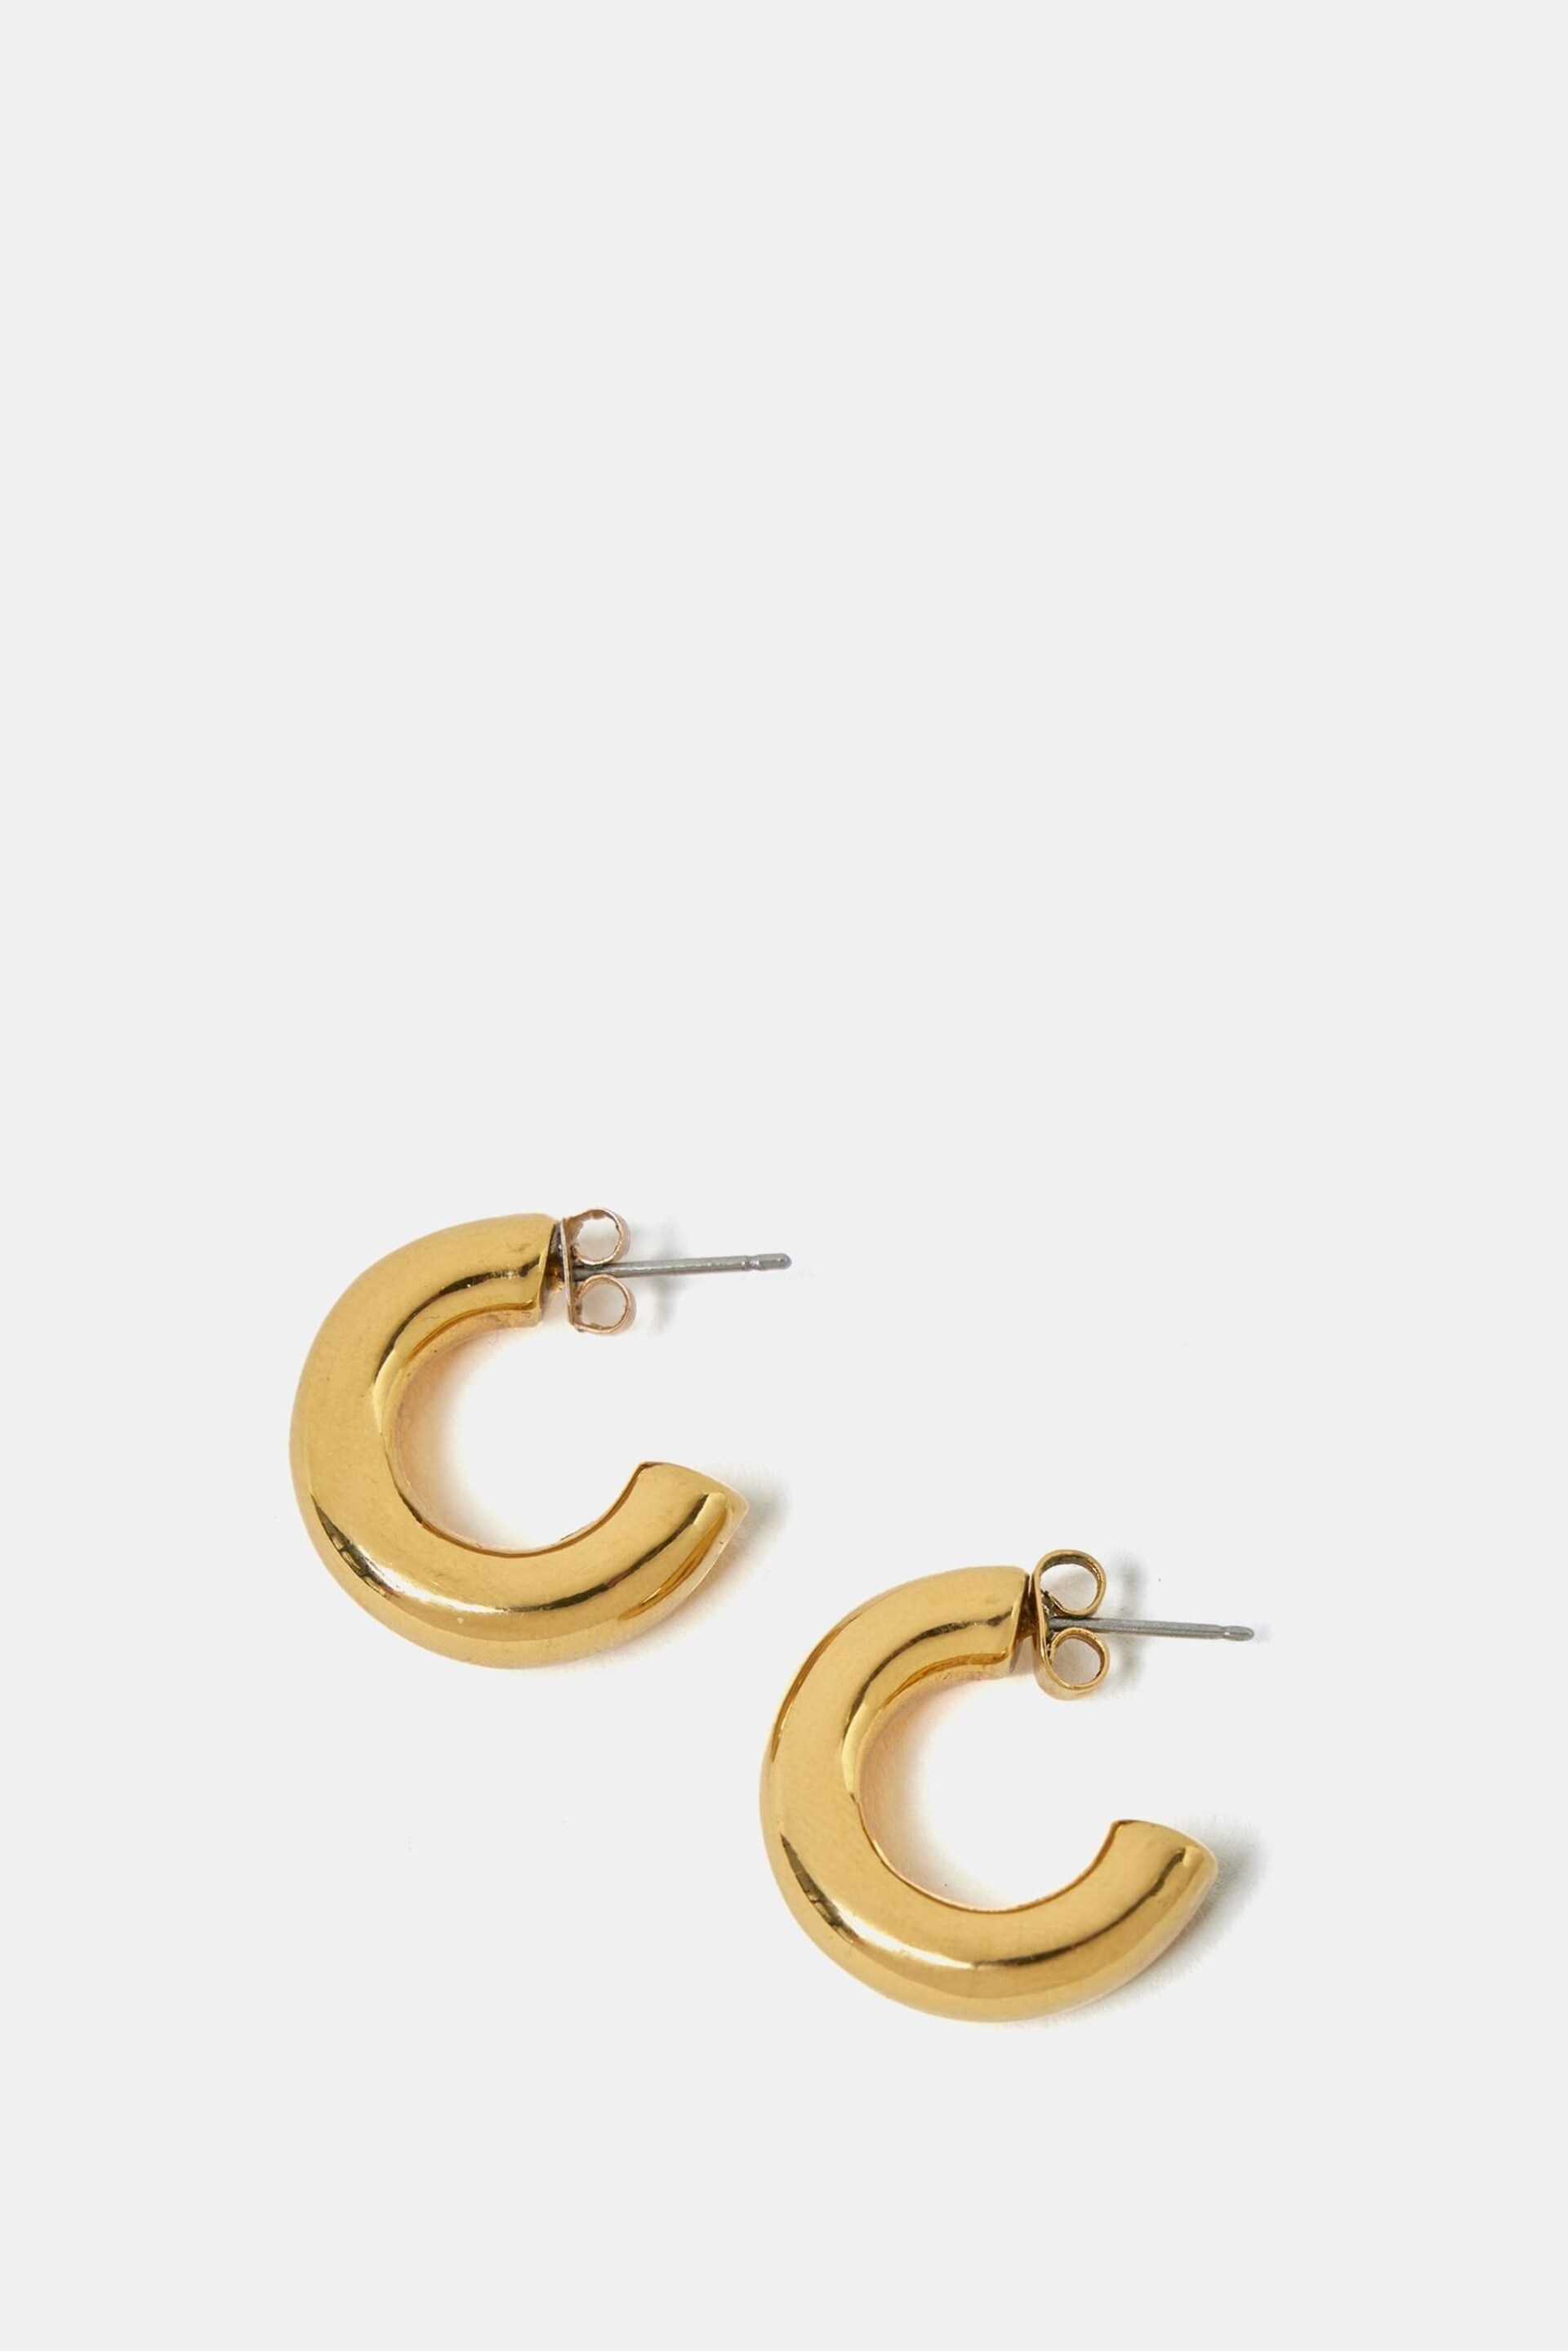 Mint Velvet Gold Plated Hoop Earrings - Image 1 of 2